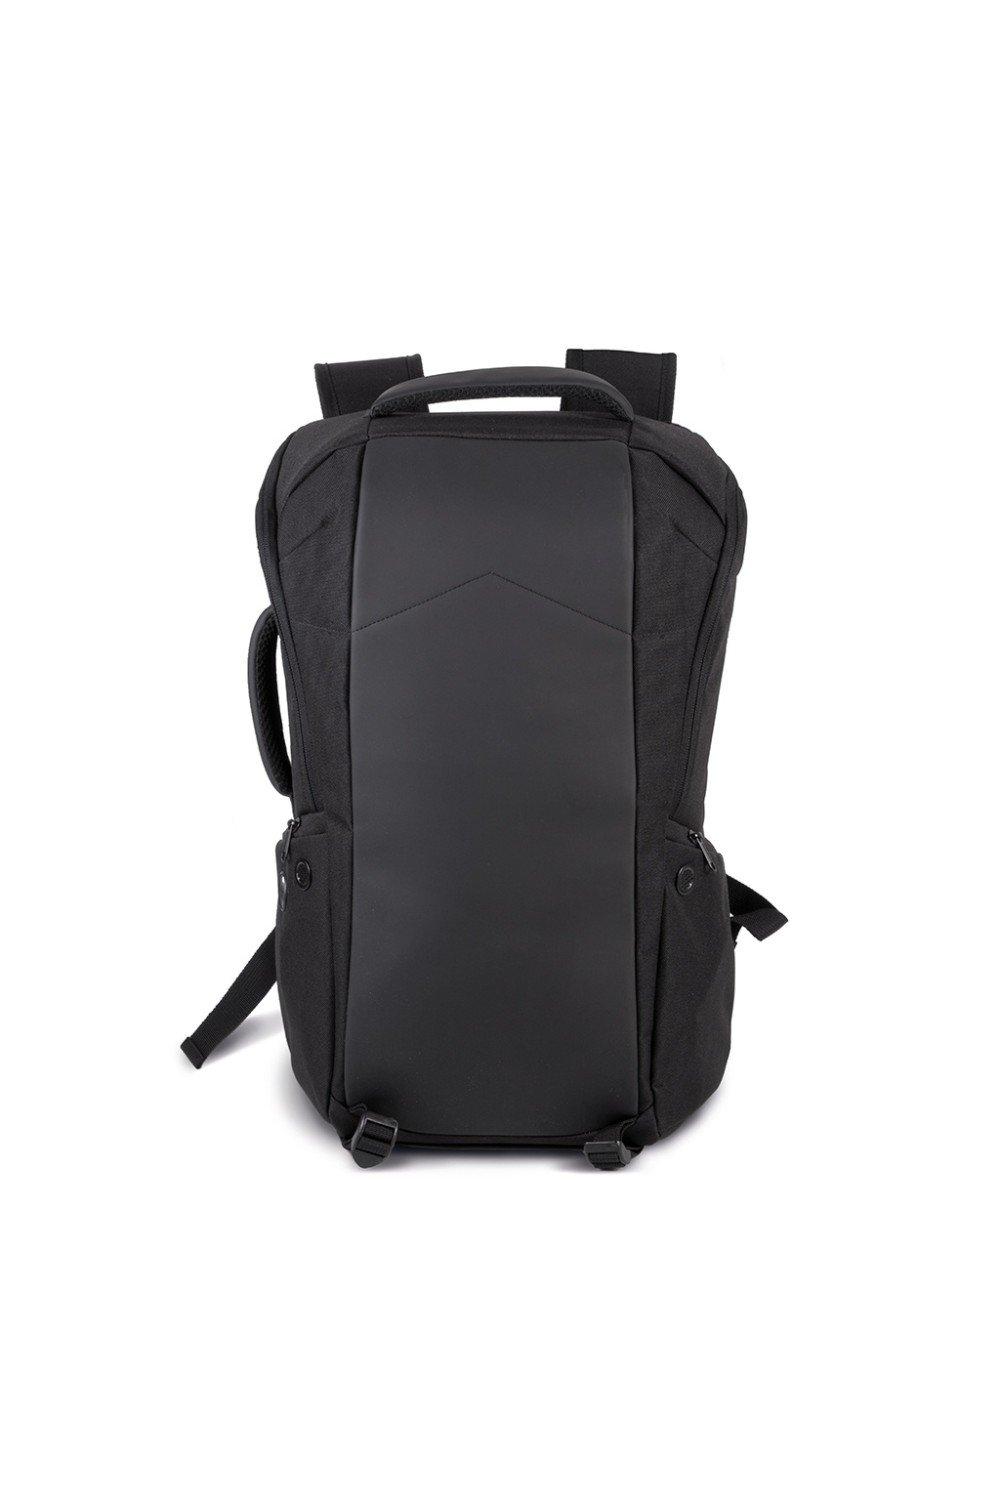 Противоугонный рюкзак Kimood, черный противоугонный студенческий дорожный рюкзак с несколькими карманамишкольный рюкзак черный